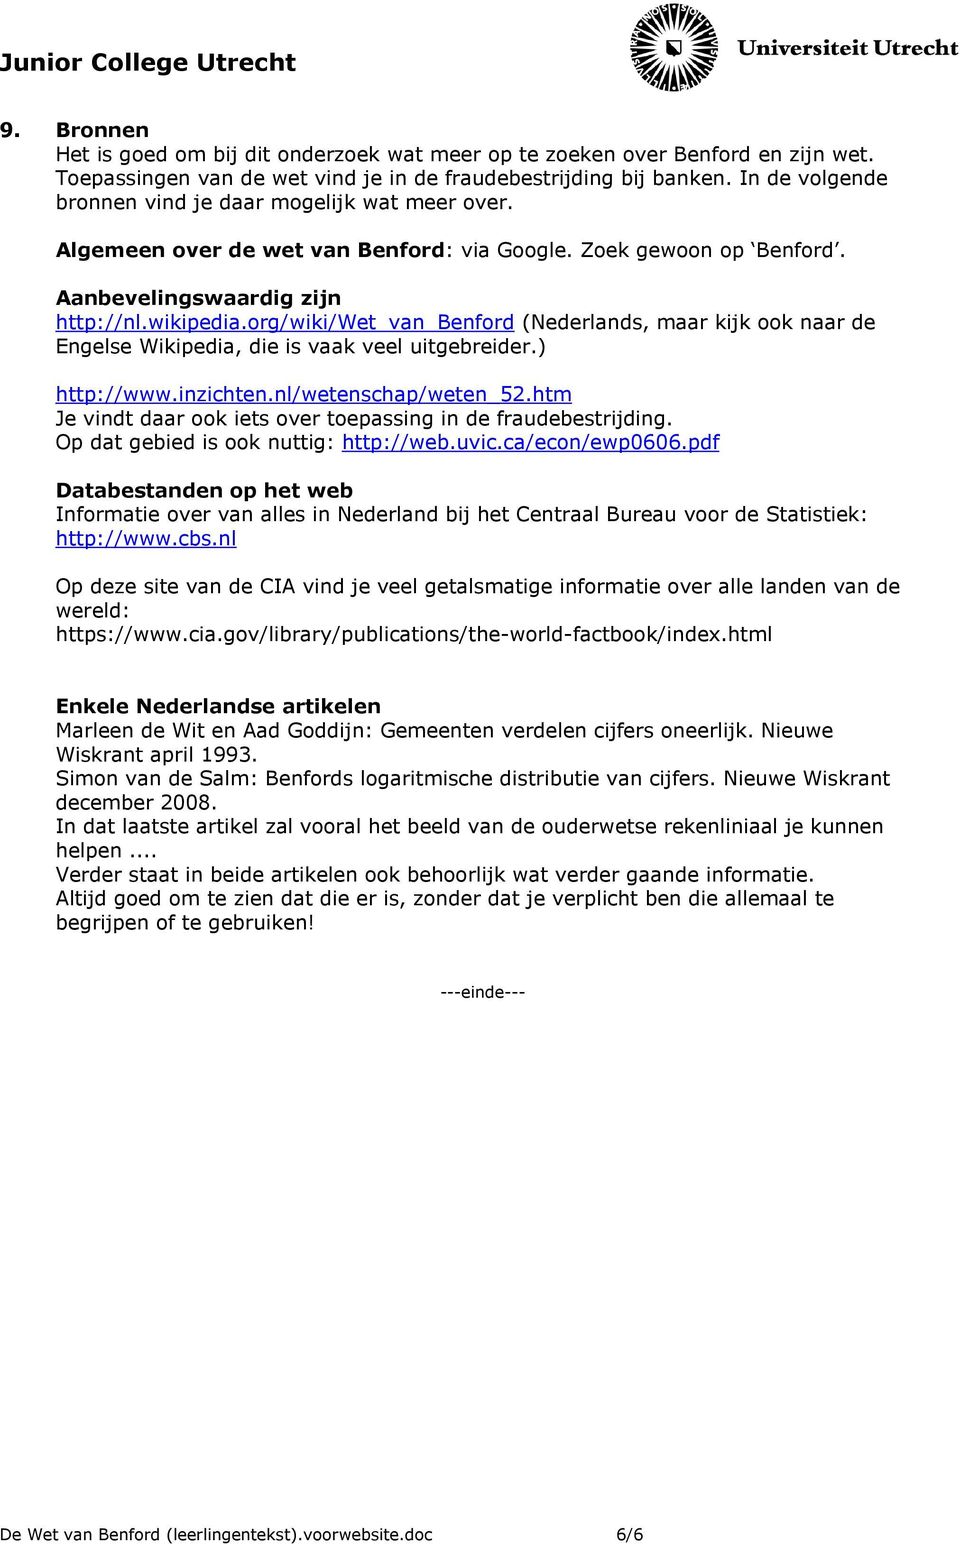 org/wiki/wet_van_benford (Nederlands, maar kijk ook naar de Engelse Wikipedia, die is vaak veel uitgebreider.) http://www.inzichten.nl/wetenschap/weten_52.